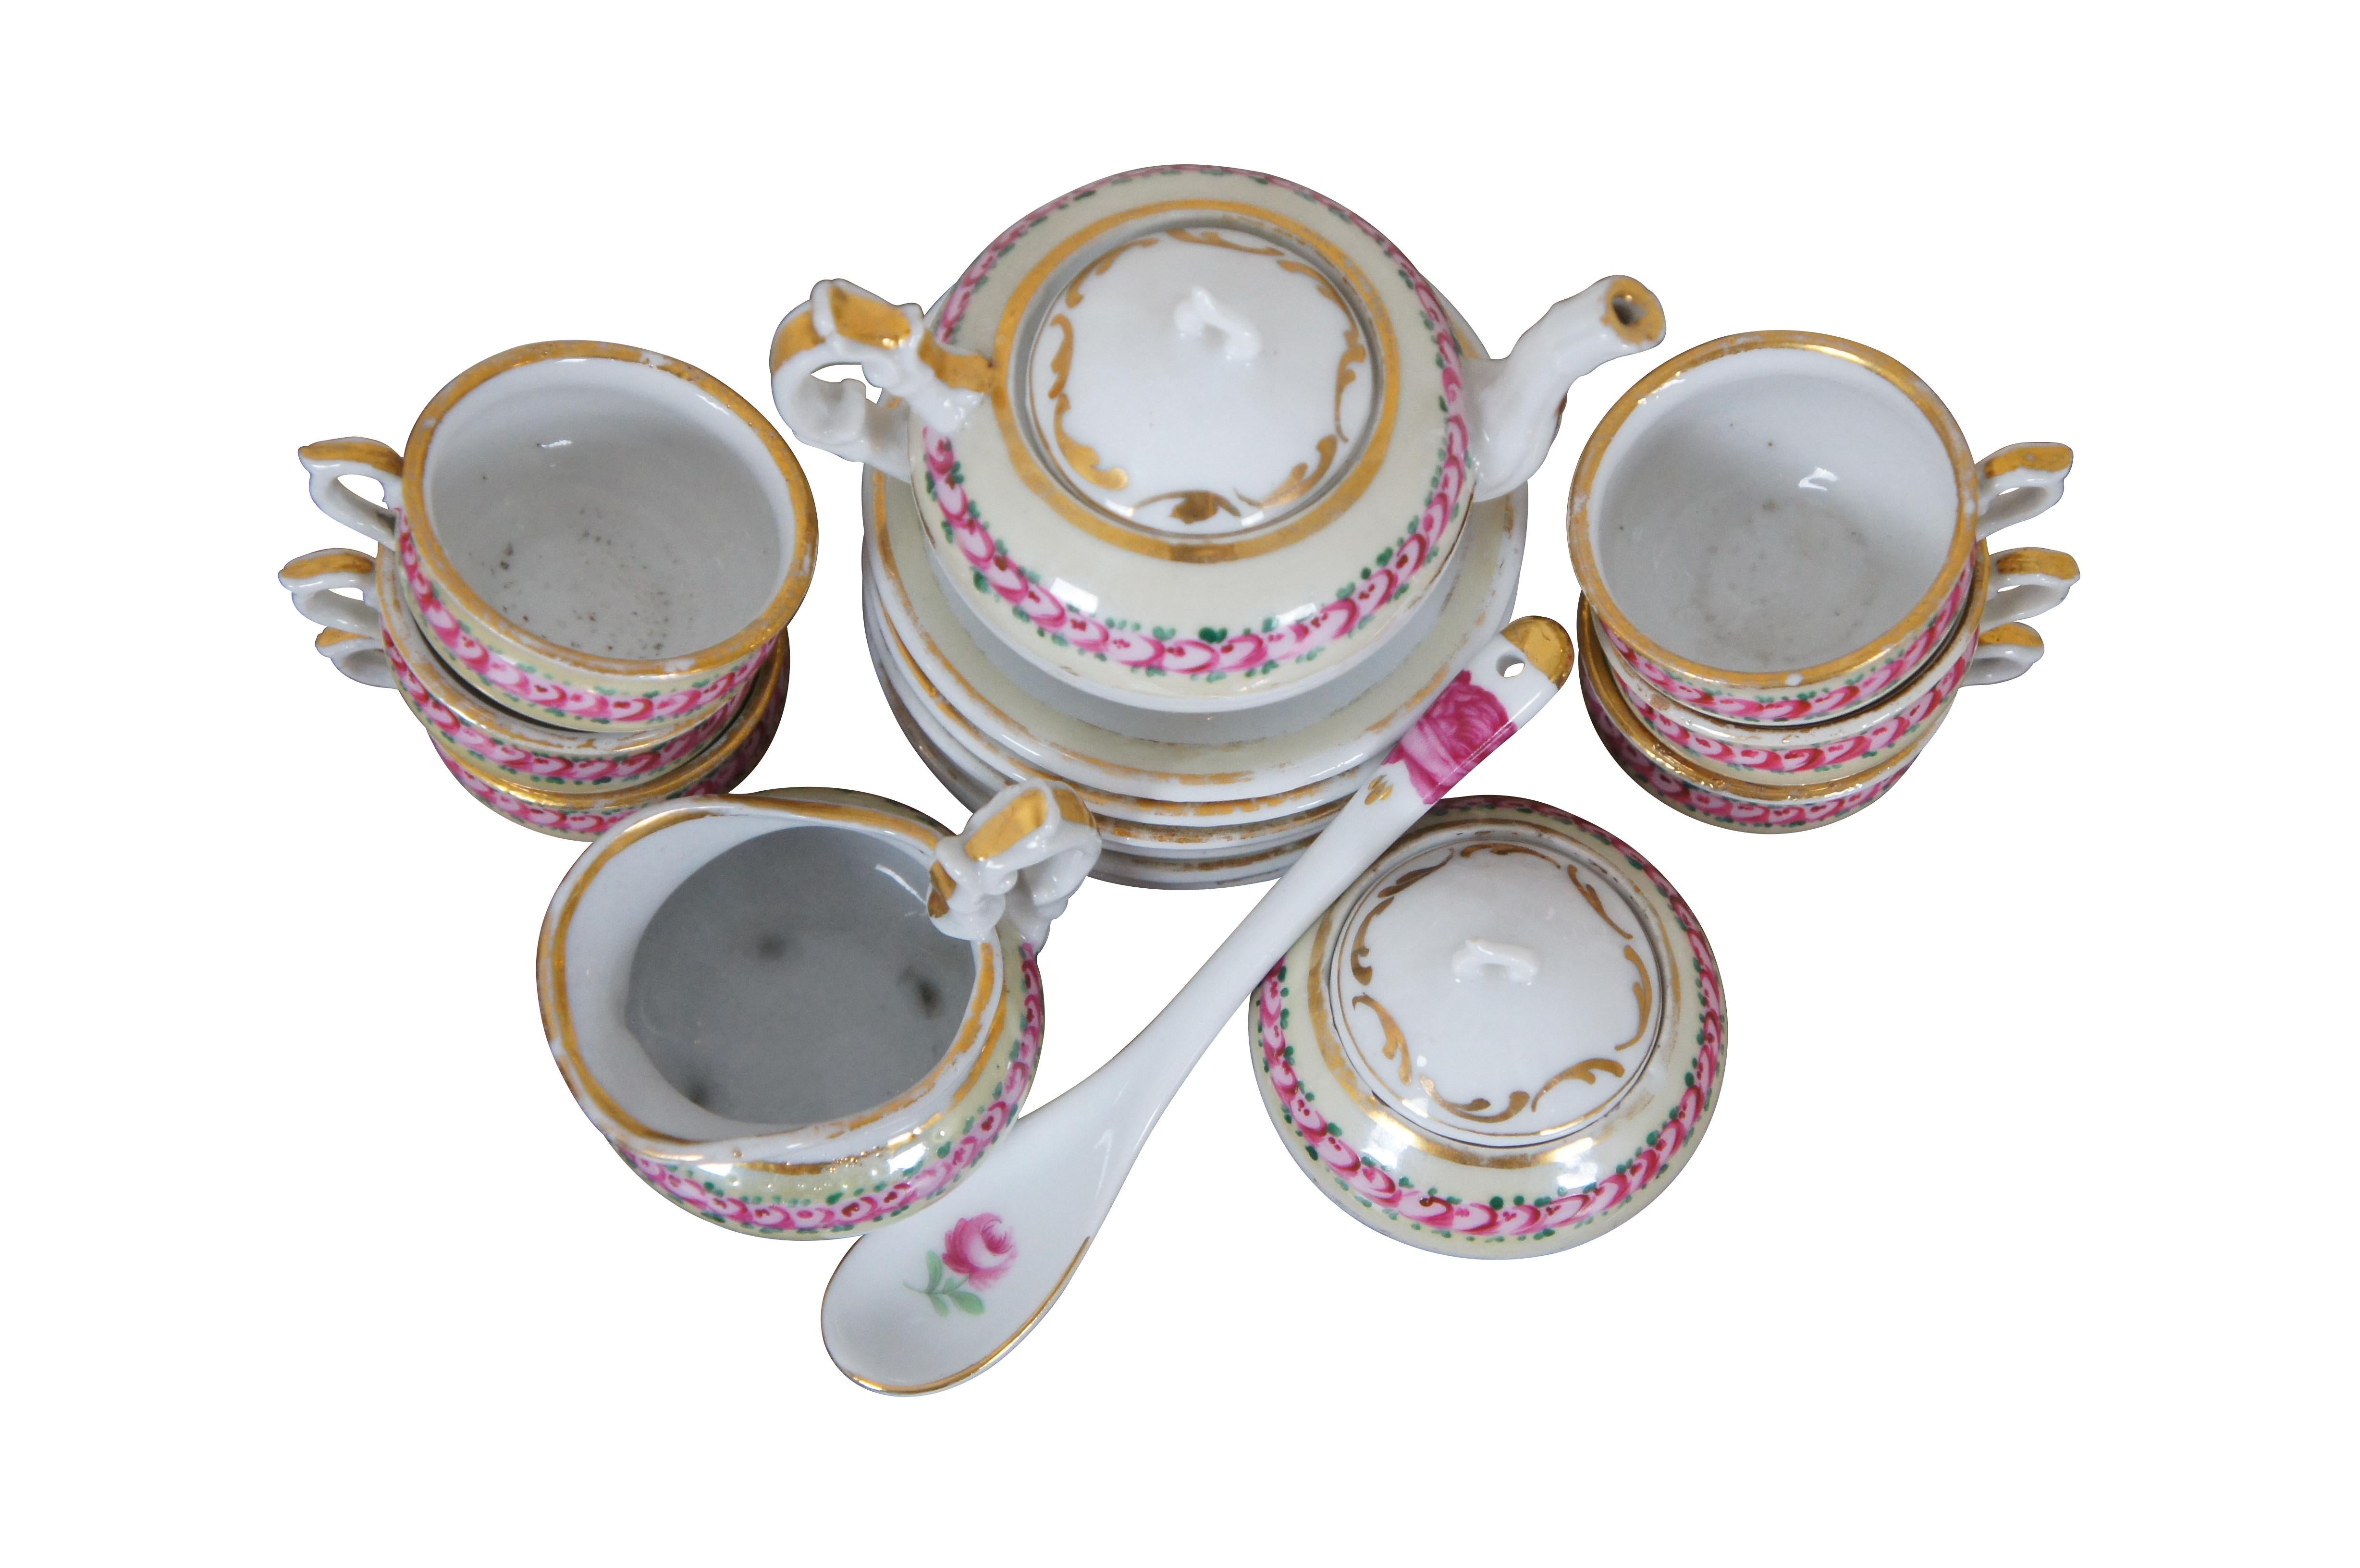 Antikes 18-teiliges Miniatur-Porzellan-Teeservice in Puppengröße, handbemalt mit rosa Rosen auf cremefarbenem Rand mit vergoldeten Akzenten. Das Set besteht aus 6 Teetassen, 6 Untertassen, einer Teekanne mit Deckel, einer Zuckerdose mit Deckel,